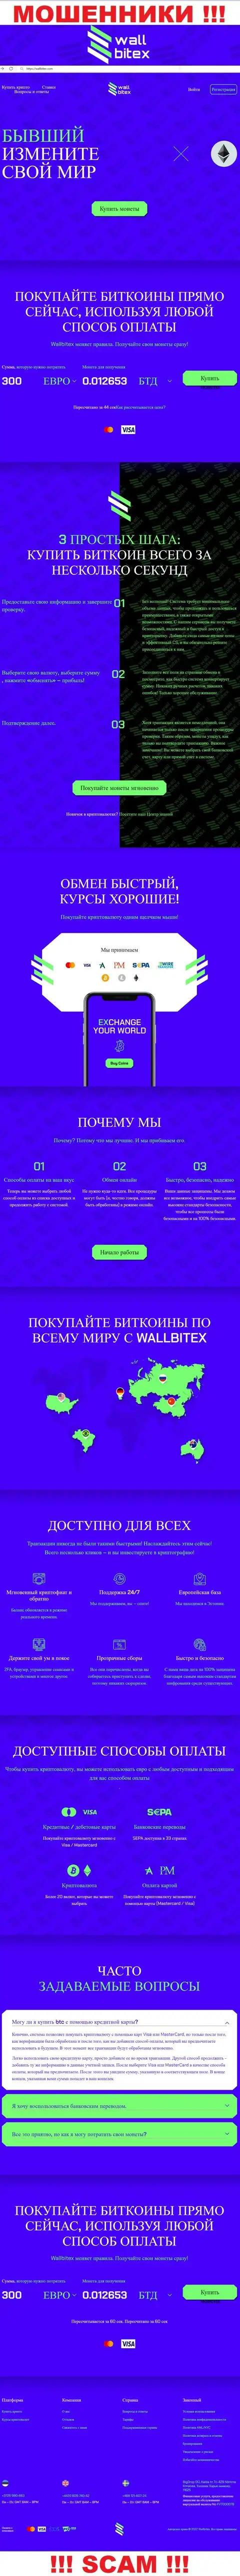 WallBitex Com - это официальный сайт преступно действующей компании Валл Битекс